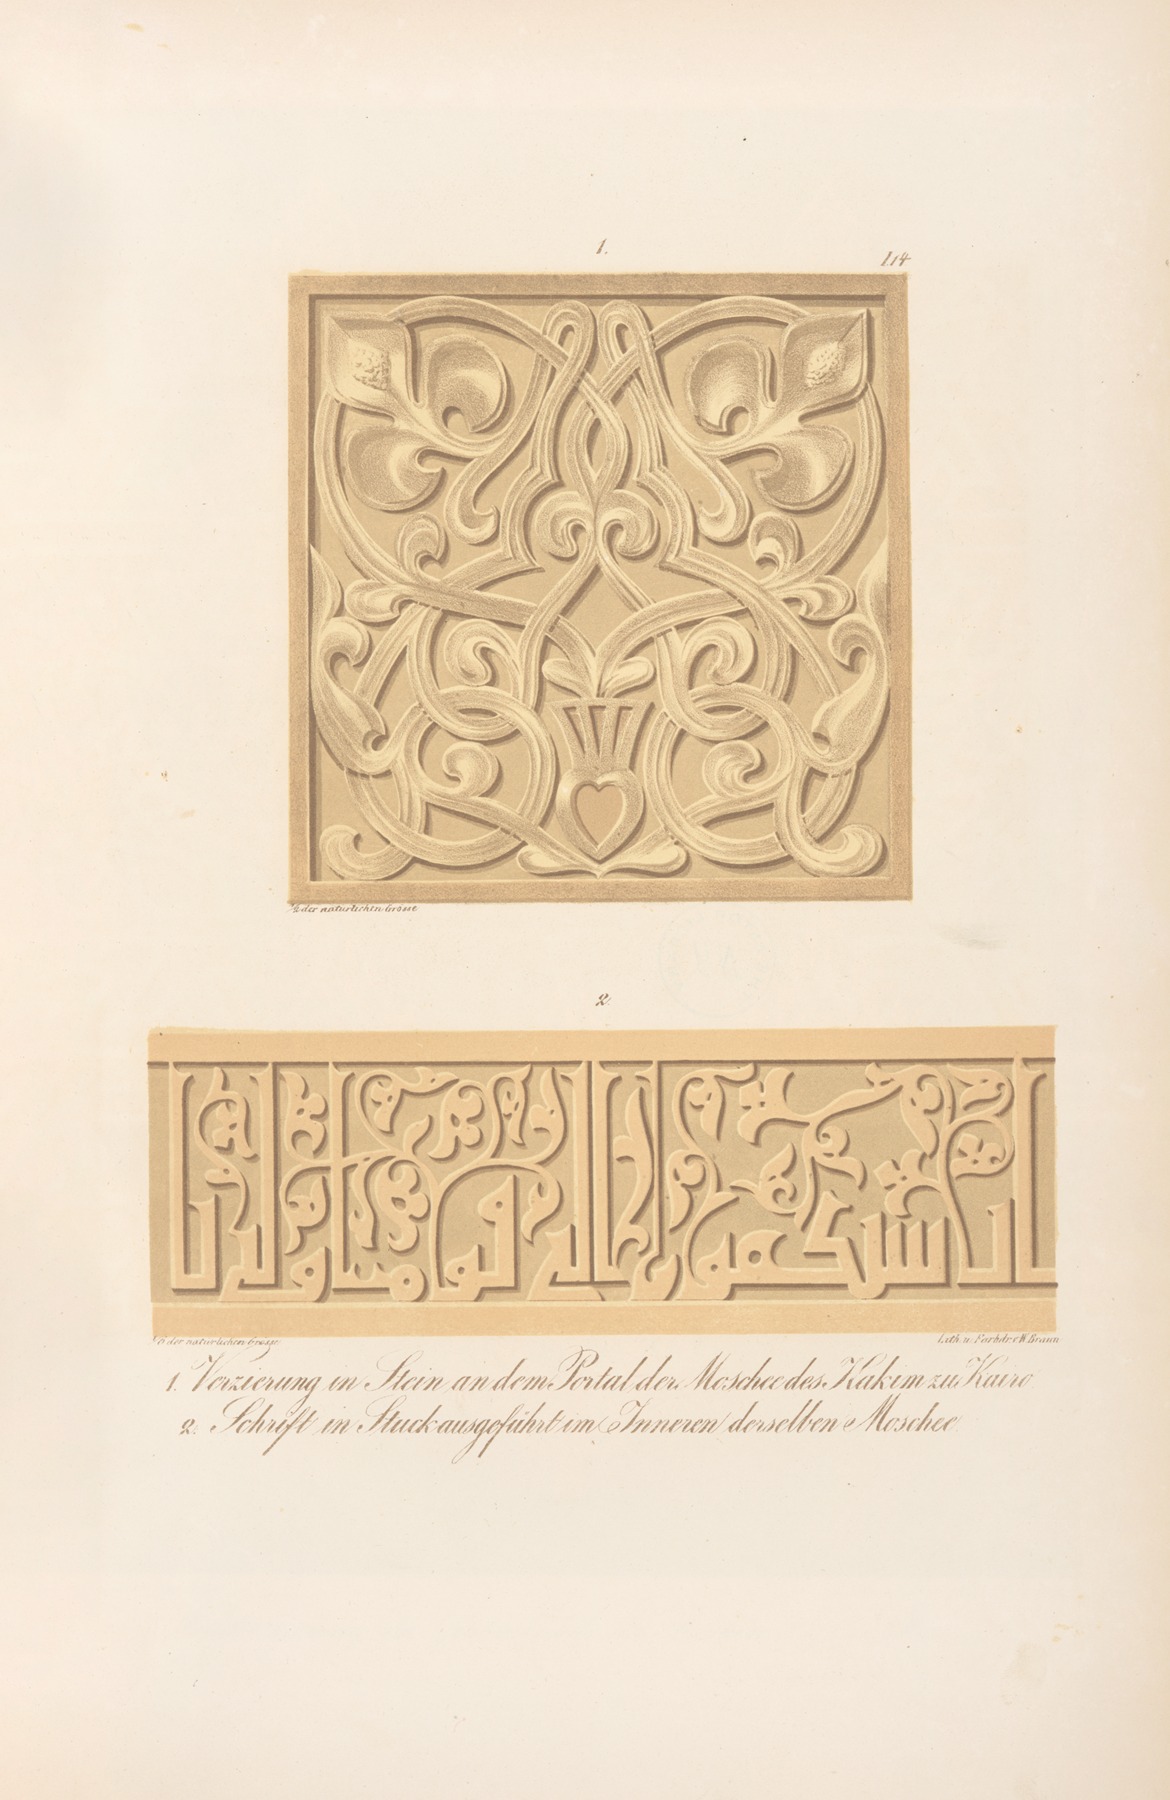 Friedrich Maximilian Hessemer - 1. Verzierung in Stein an dem Portal der Moschee des Hakim zu Kairo, 2. Schrift in Stuck ausgeführt im Inneren der selben Moschee